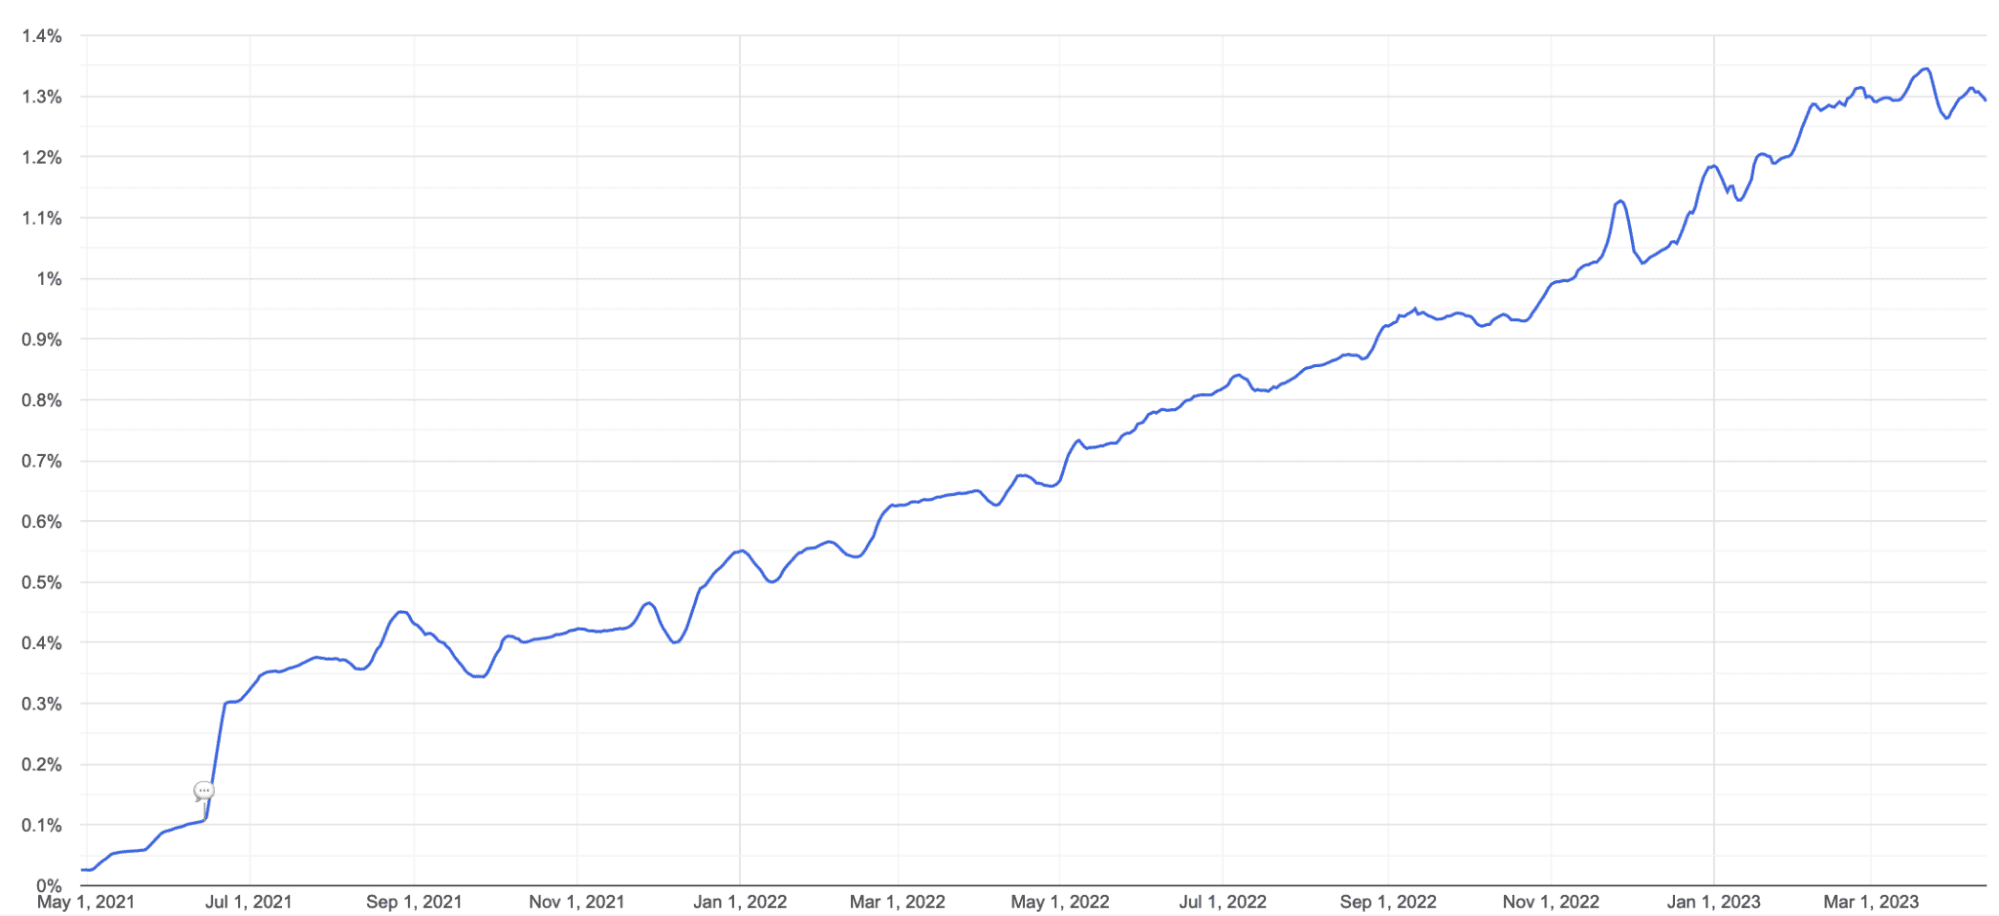 Wykres liniowy wykorzystania AVIF w Chrome od maja 2021 r. do marca 2023 r. Wsparcie rośnie od 0% do nieco poniżej 1,4%.